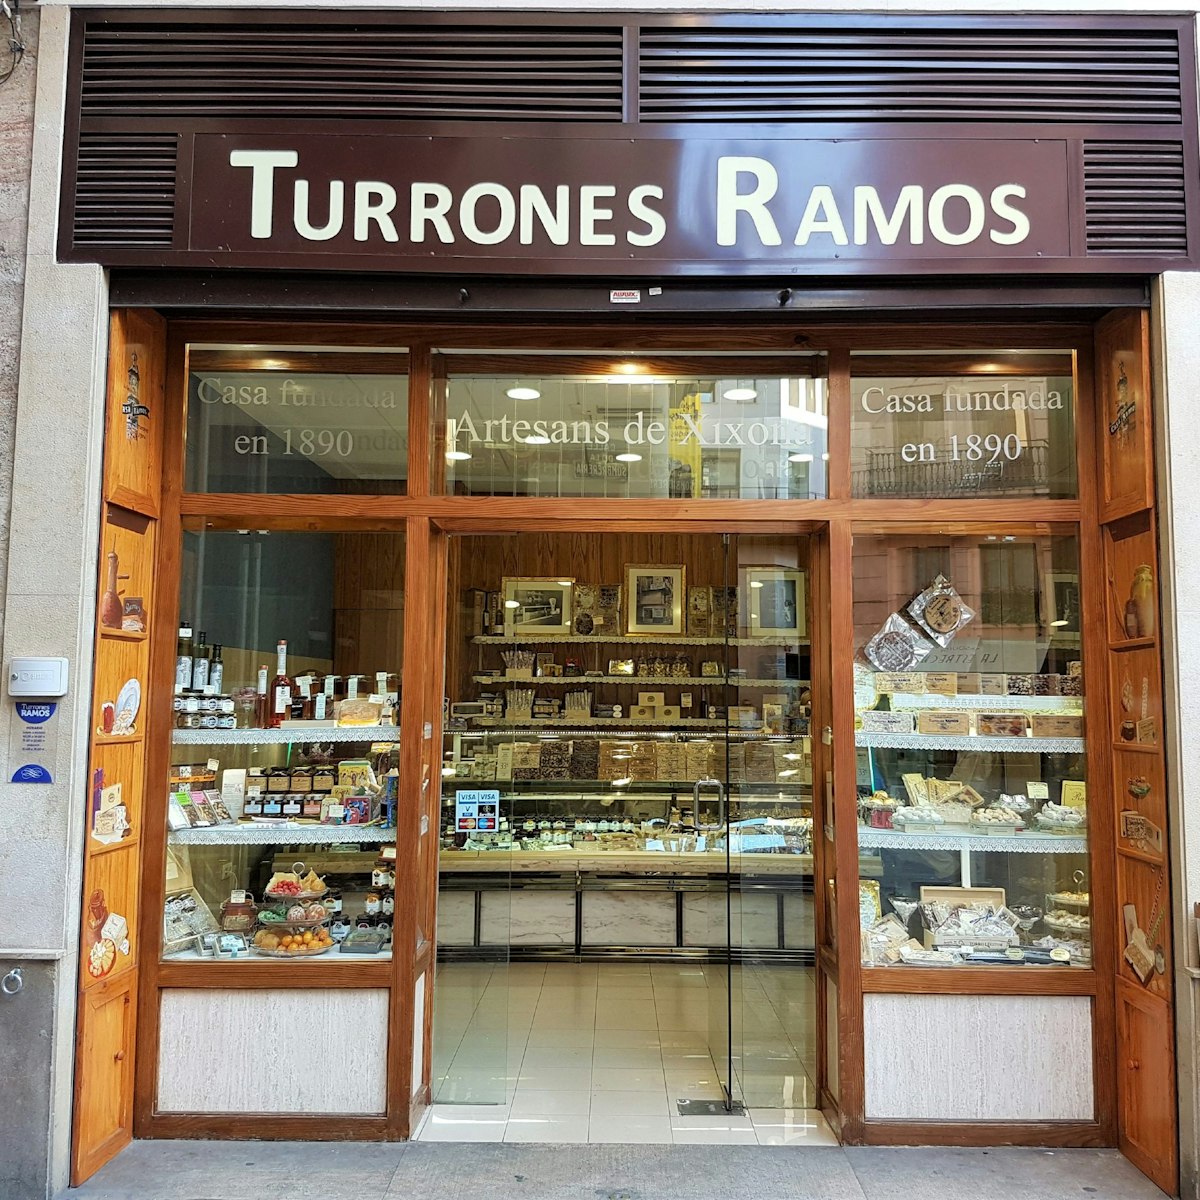 Entrance of Turrones Ramos pasticceria.